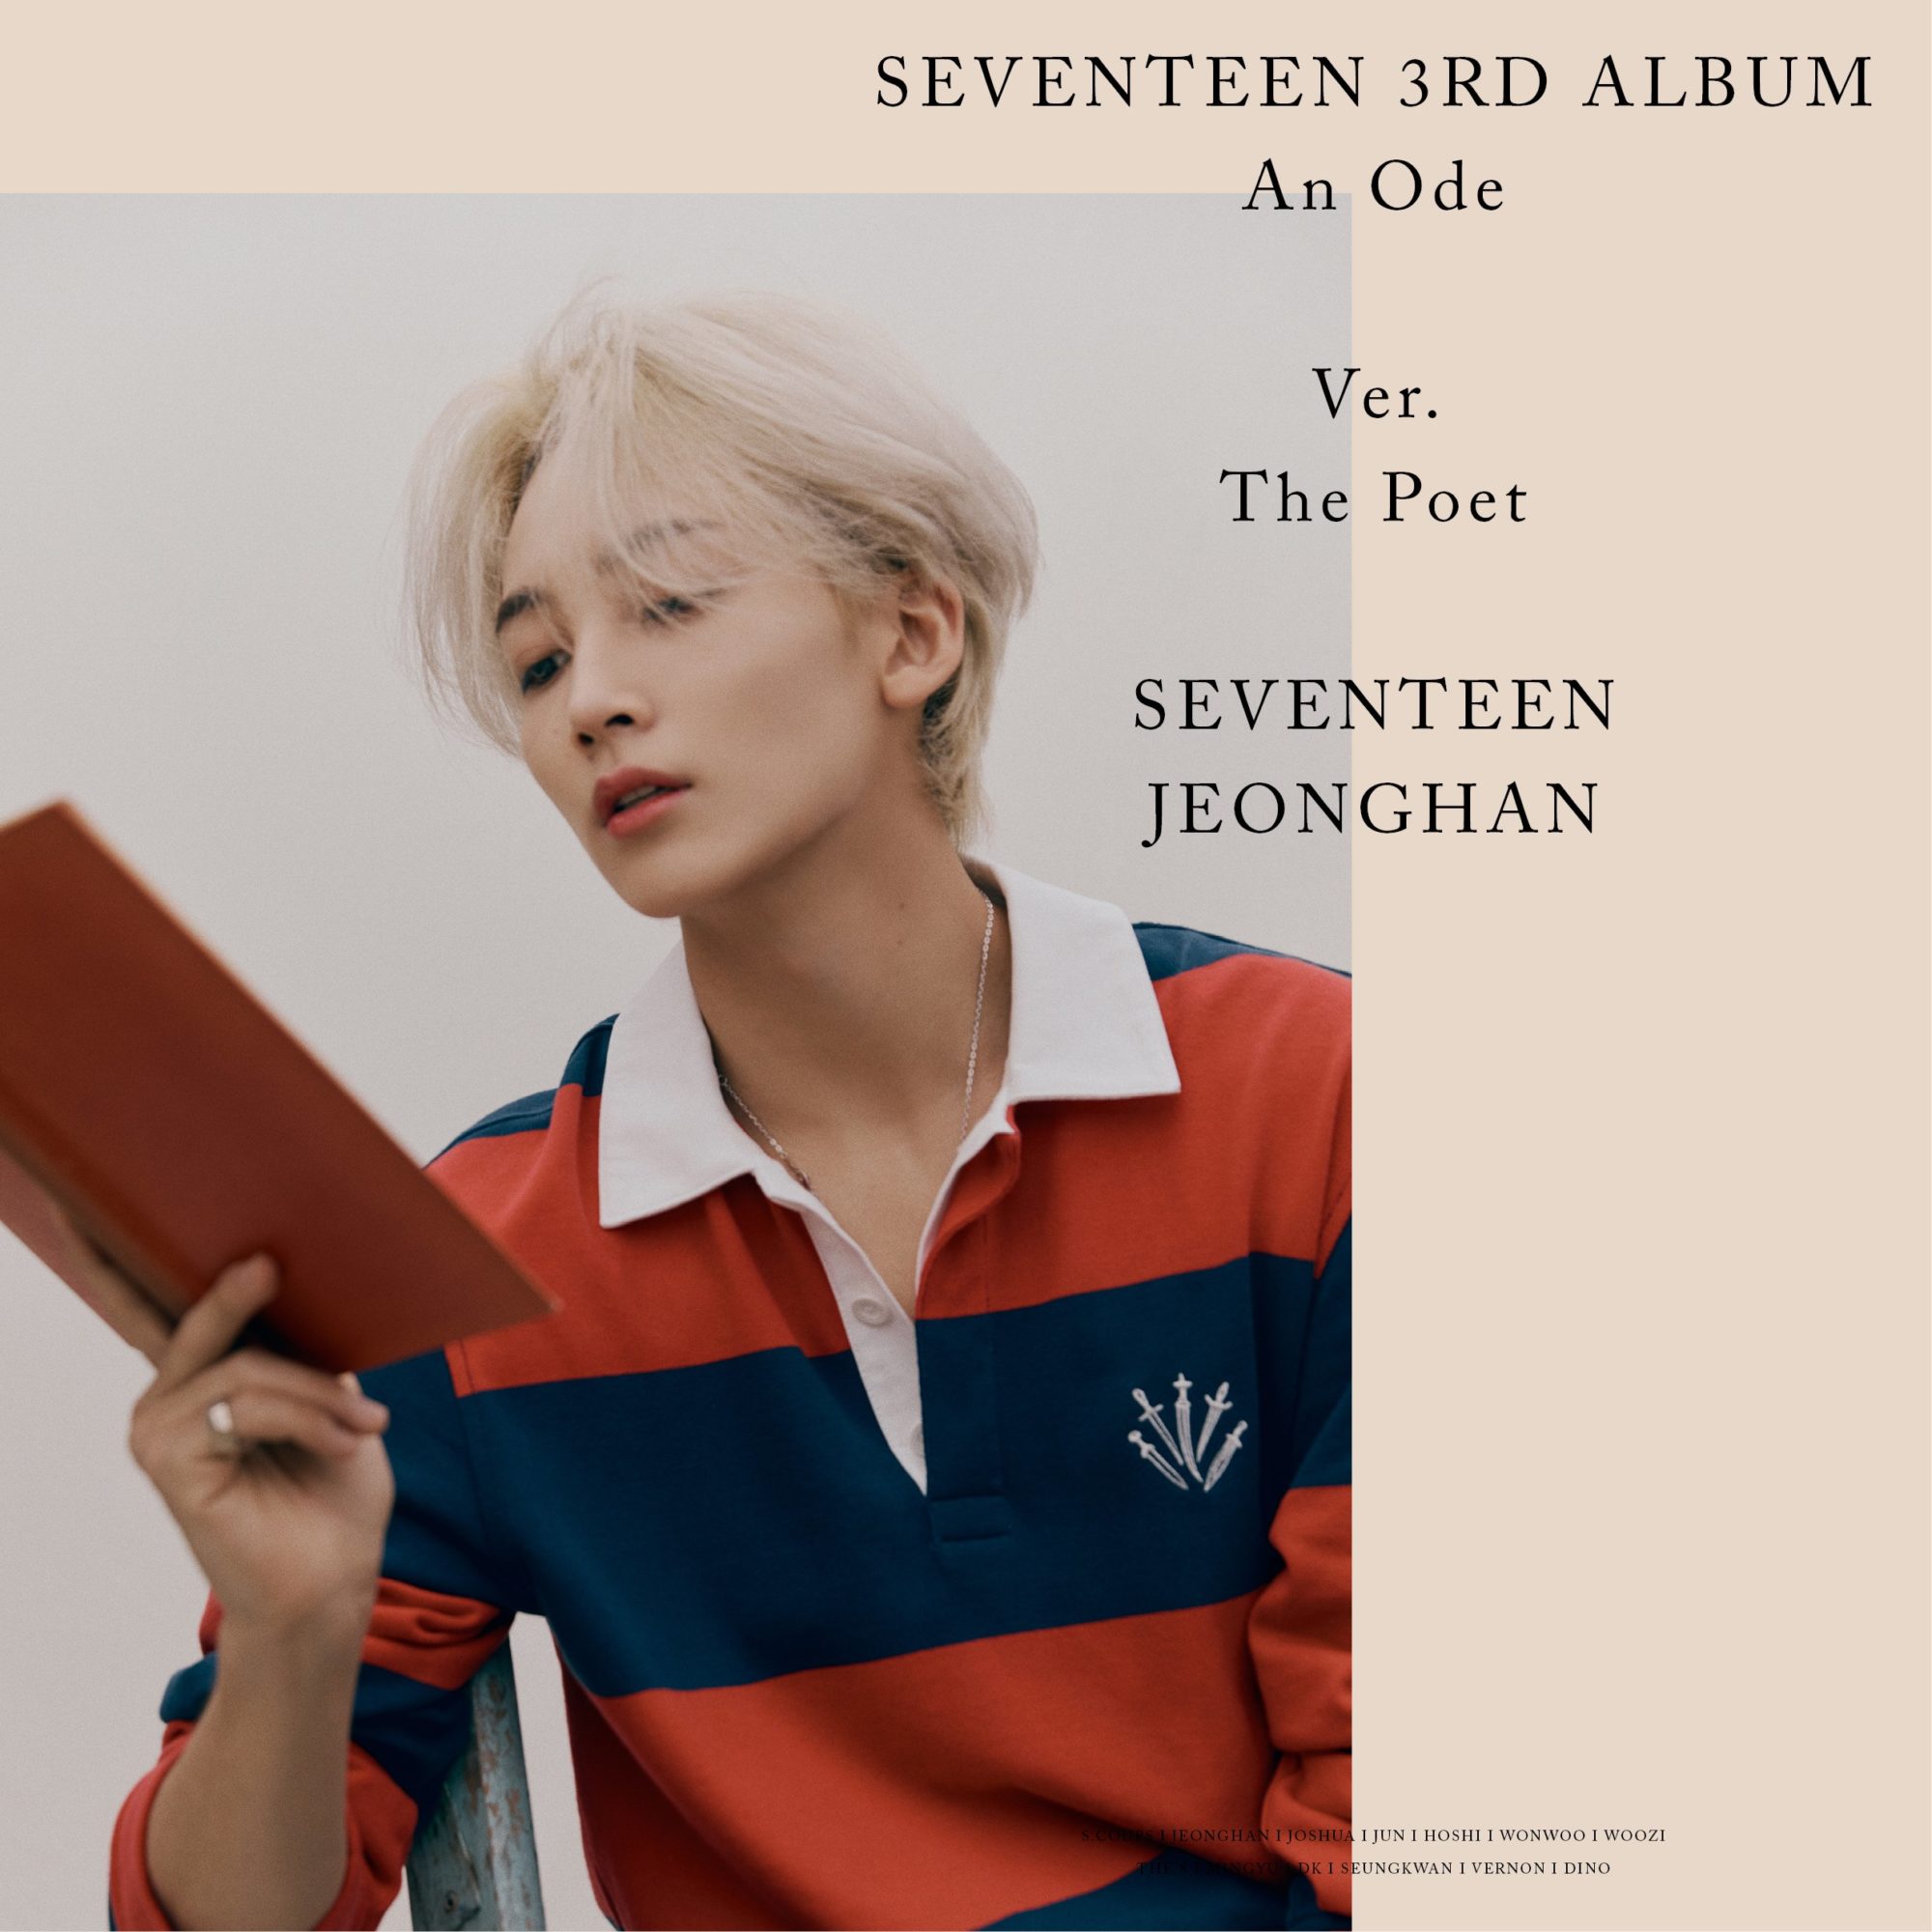 Seventeen An Ode The Poet Ver. Jeonghan